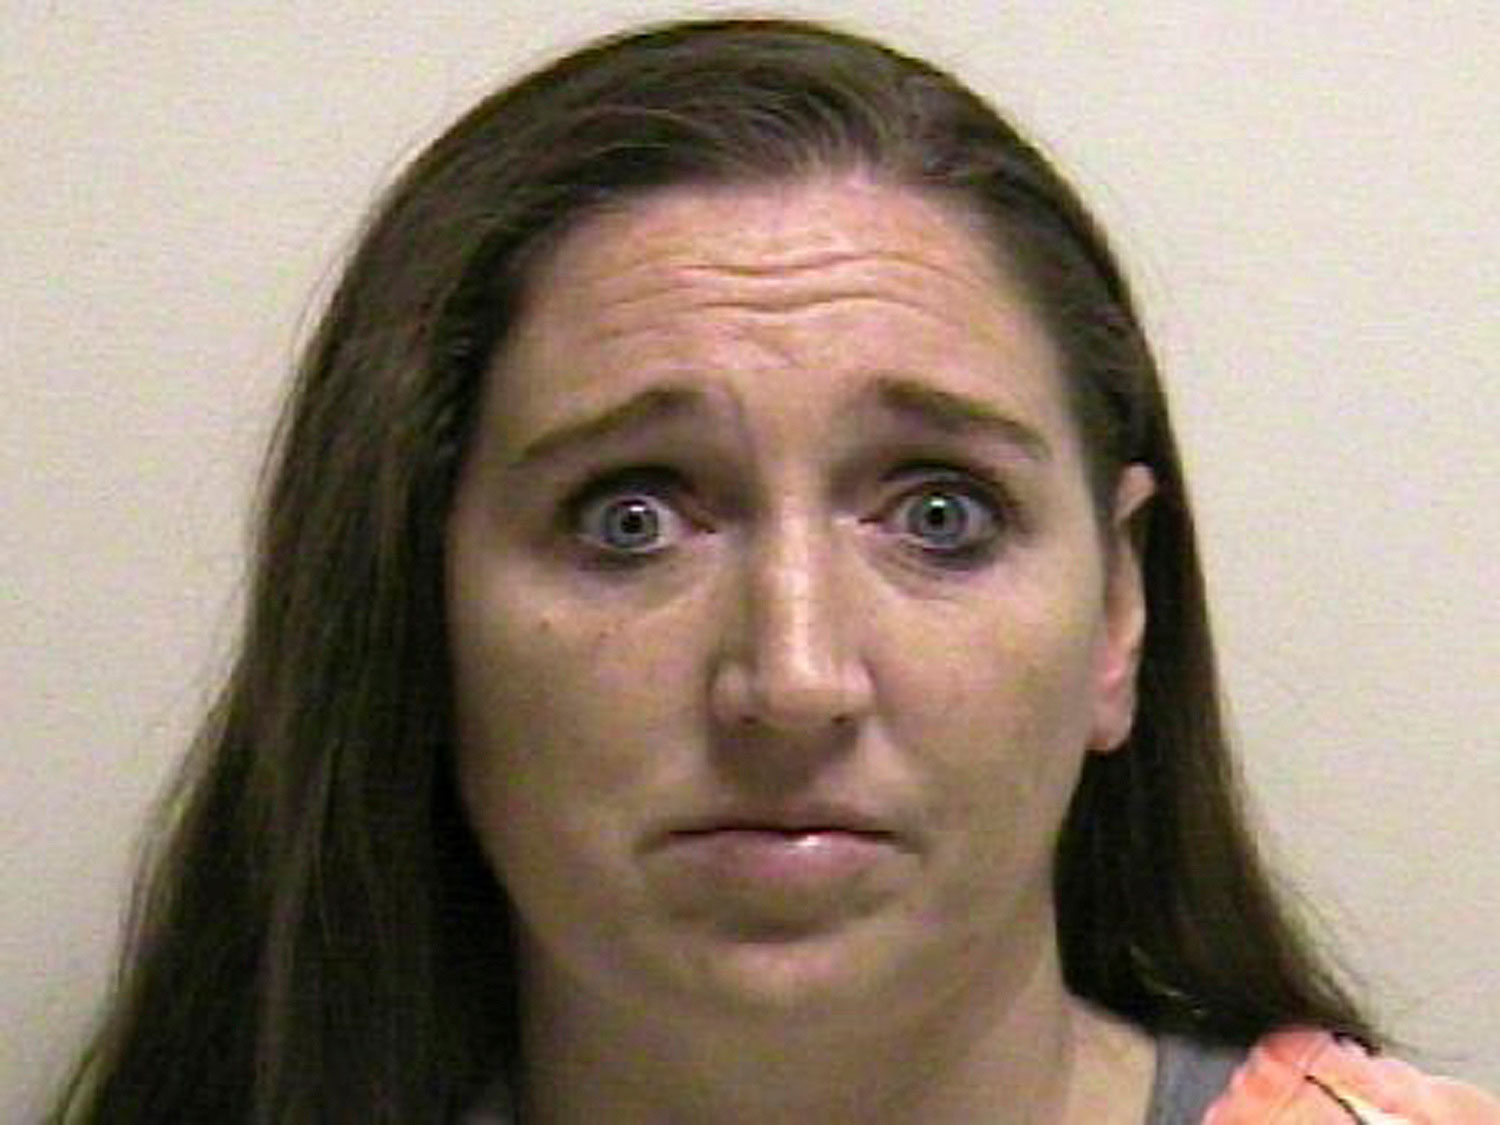 Megan Huntsman at Pleasant Grove County Jail in Pleasant Grove, Utah on April 13, 2014.